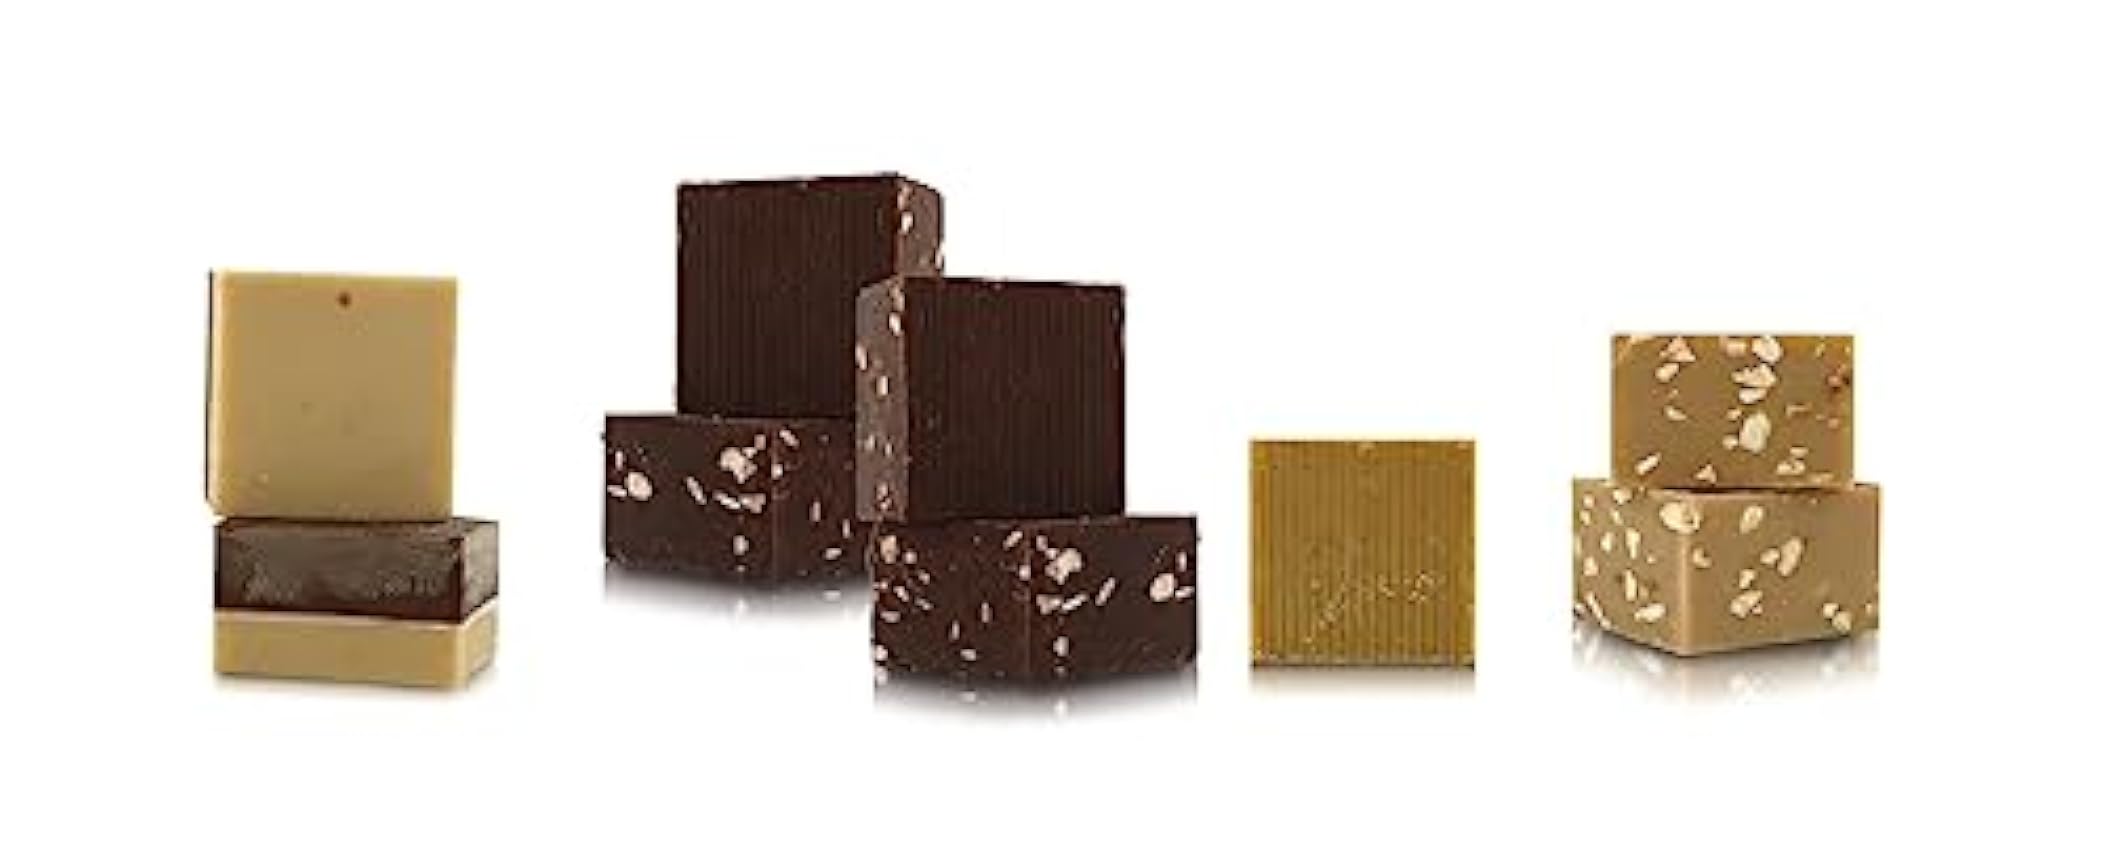 T´a Milano Paquete Degustación Chocolates Cremini Artisanales Italianos,16 Piezas, 160 Gramos OcoyLAty